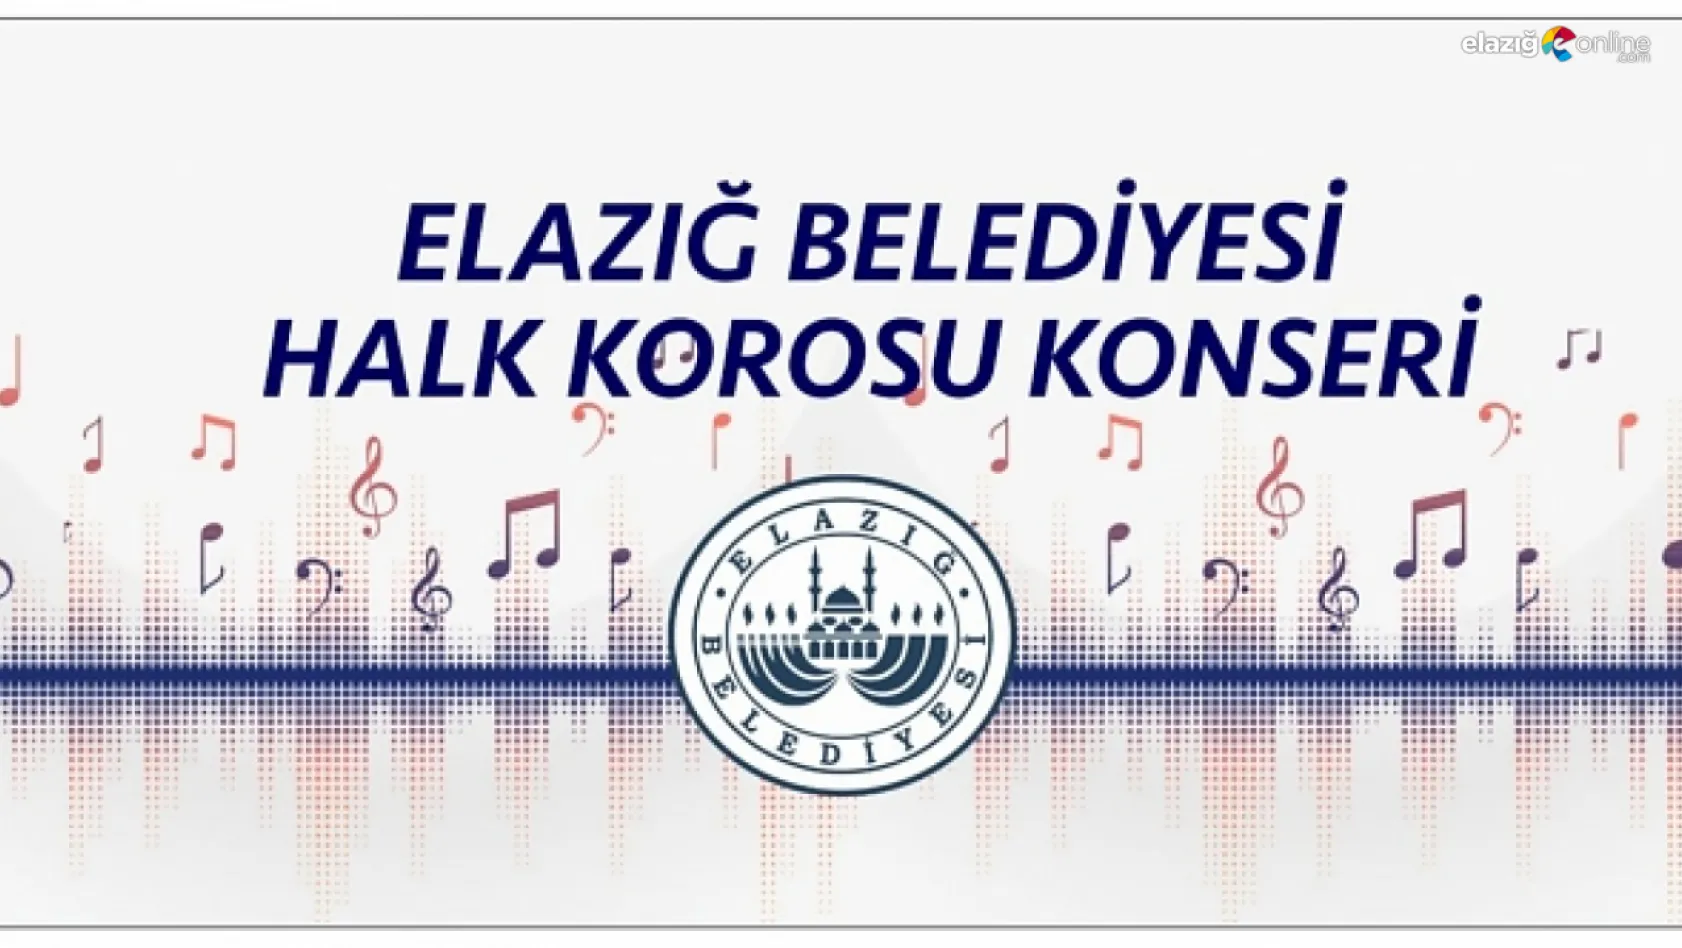 Haydi Elazığ konsere! Elazığ Belediyesi Halk Korosu, ilk konserini vermeye hazırlanıyor